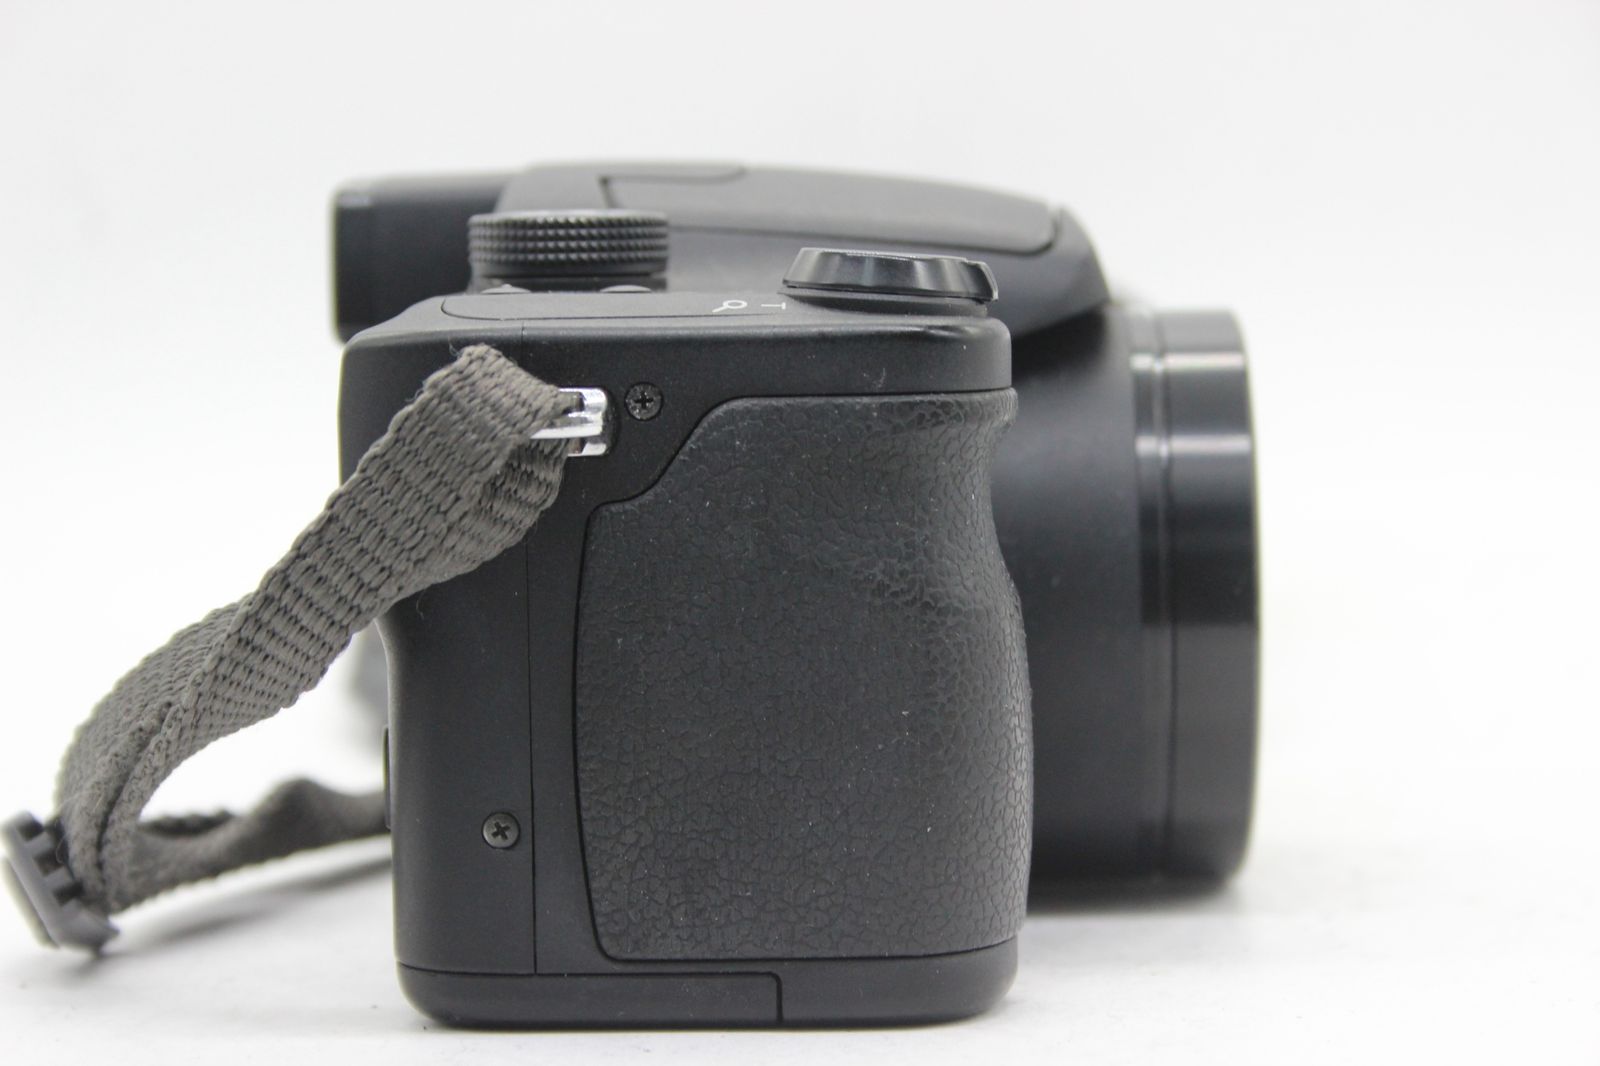 返品保証】 パナソニック Panasonic LUMIX DMC-FZ7 12x バッテリー チャージャー付き コンパクトデジタルカメラ s8280  - メルカリ